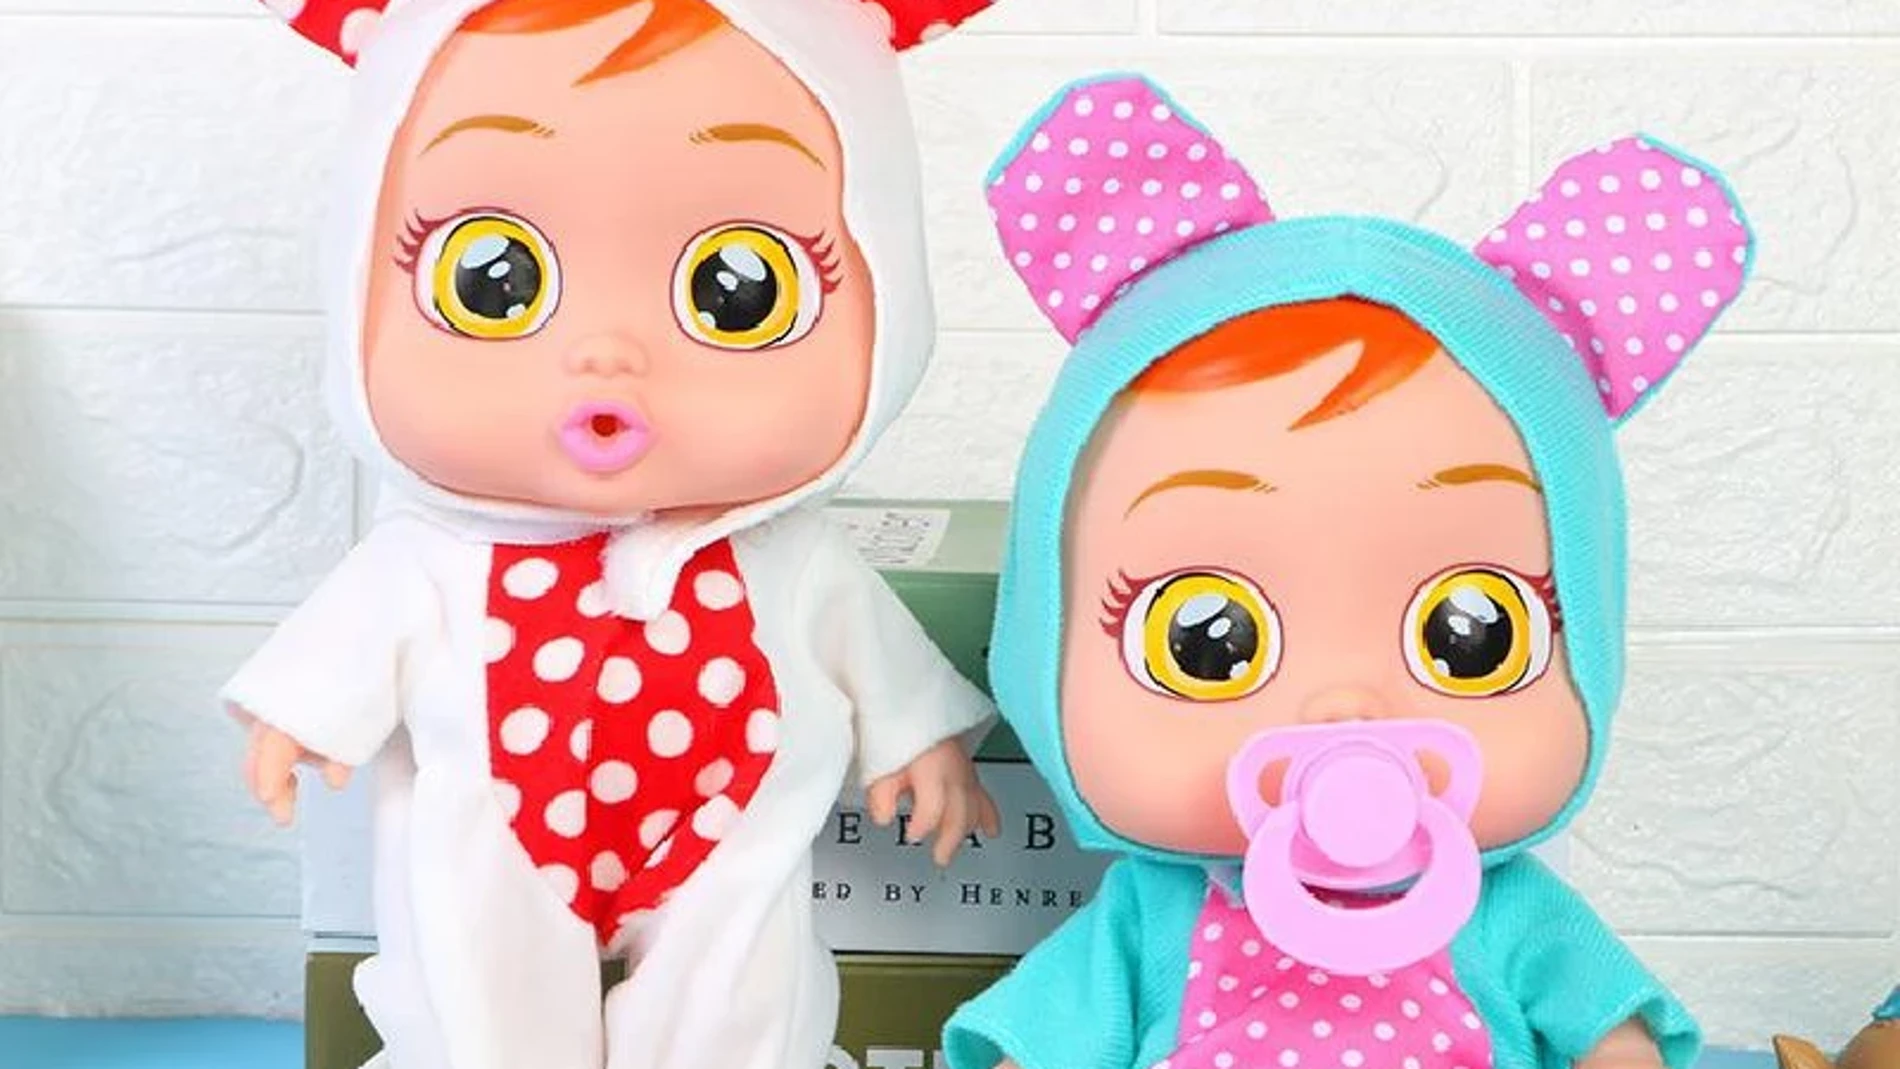 Muñeca bebé llorona, de FOPCC, es uno de los juguetes peligrosos para los niños